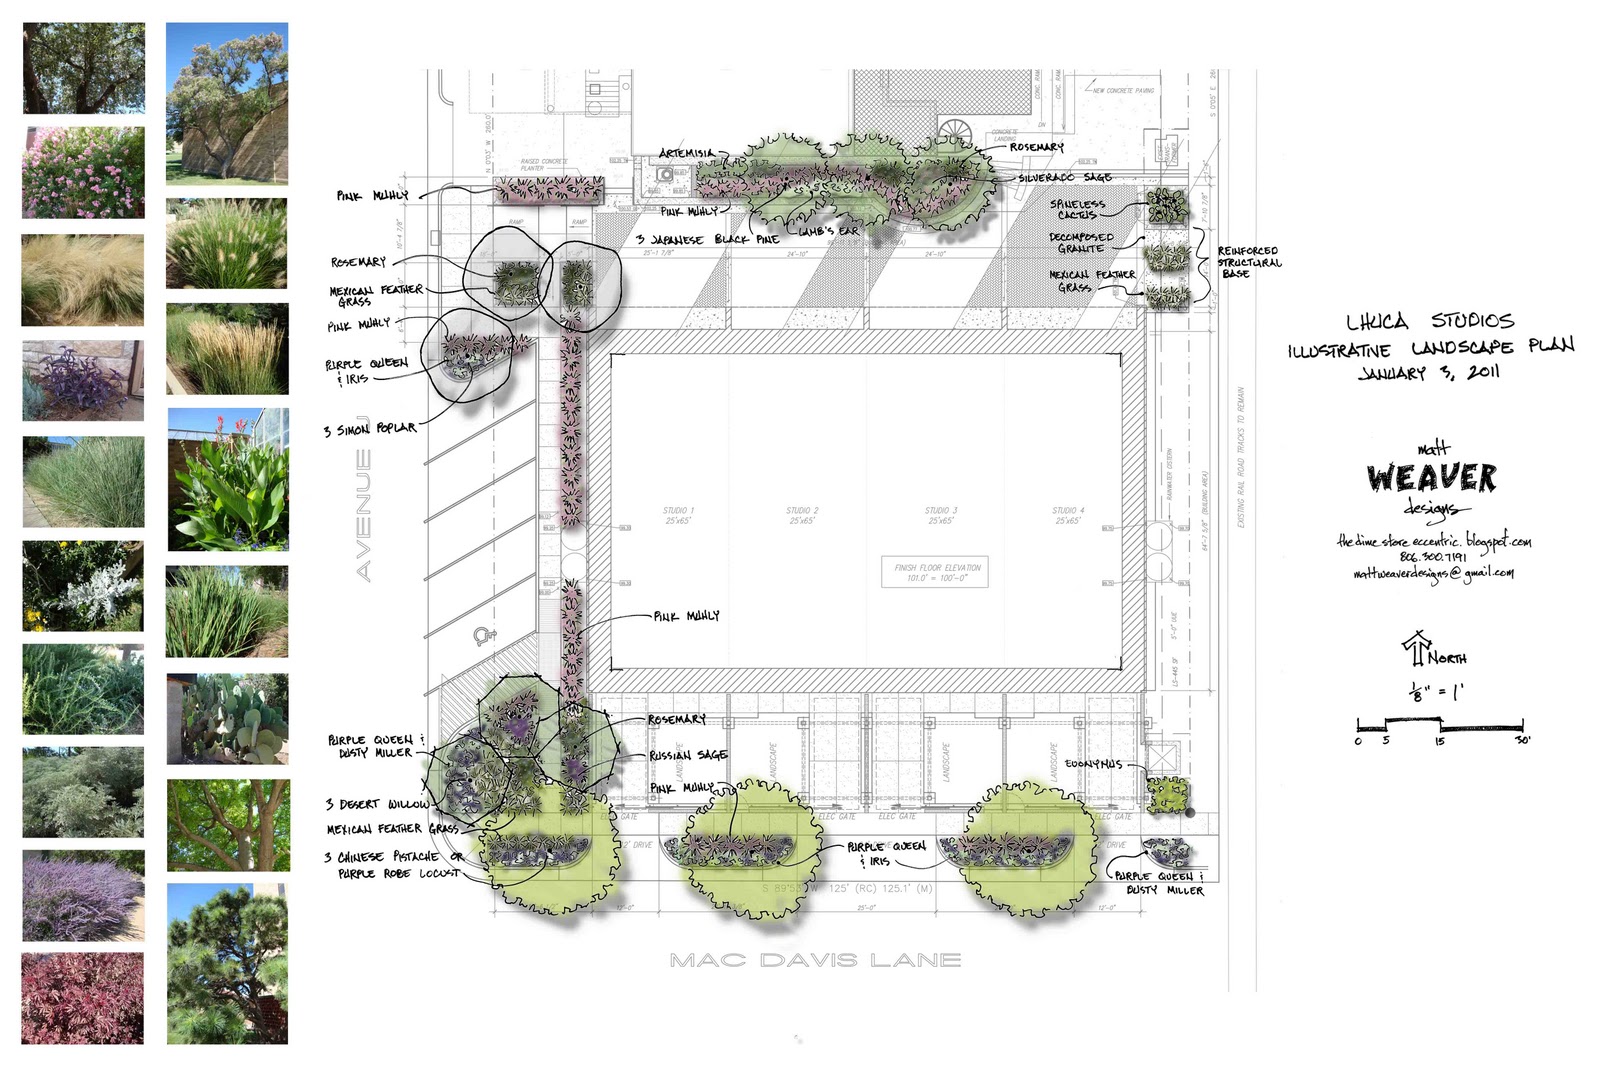 LHUCA Studio Flats Conceptual Planting Plan